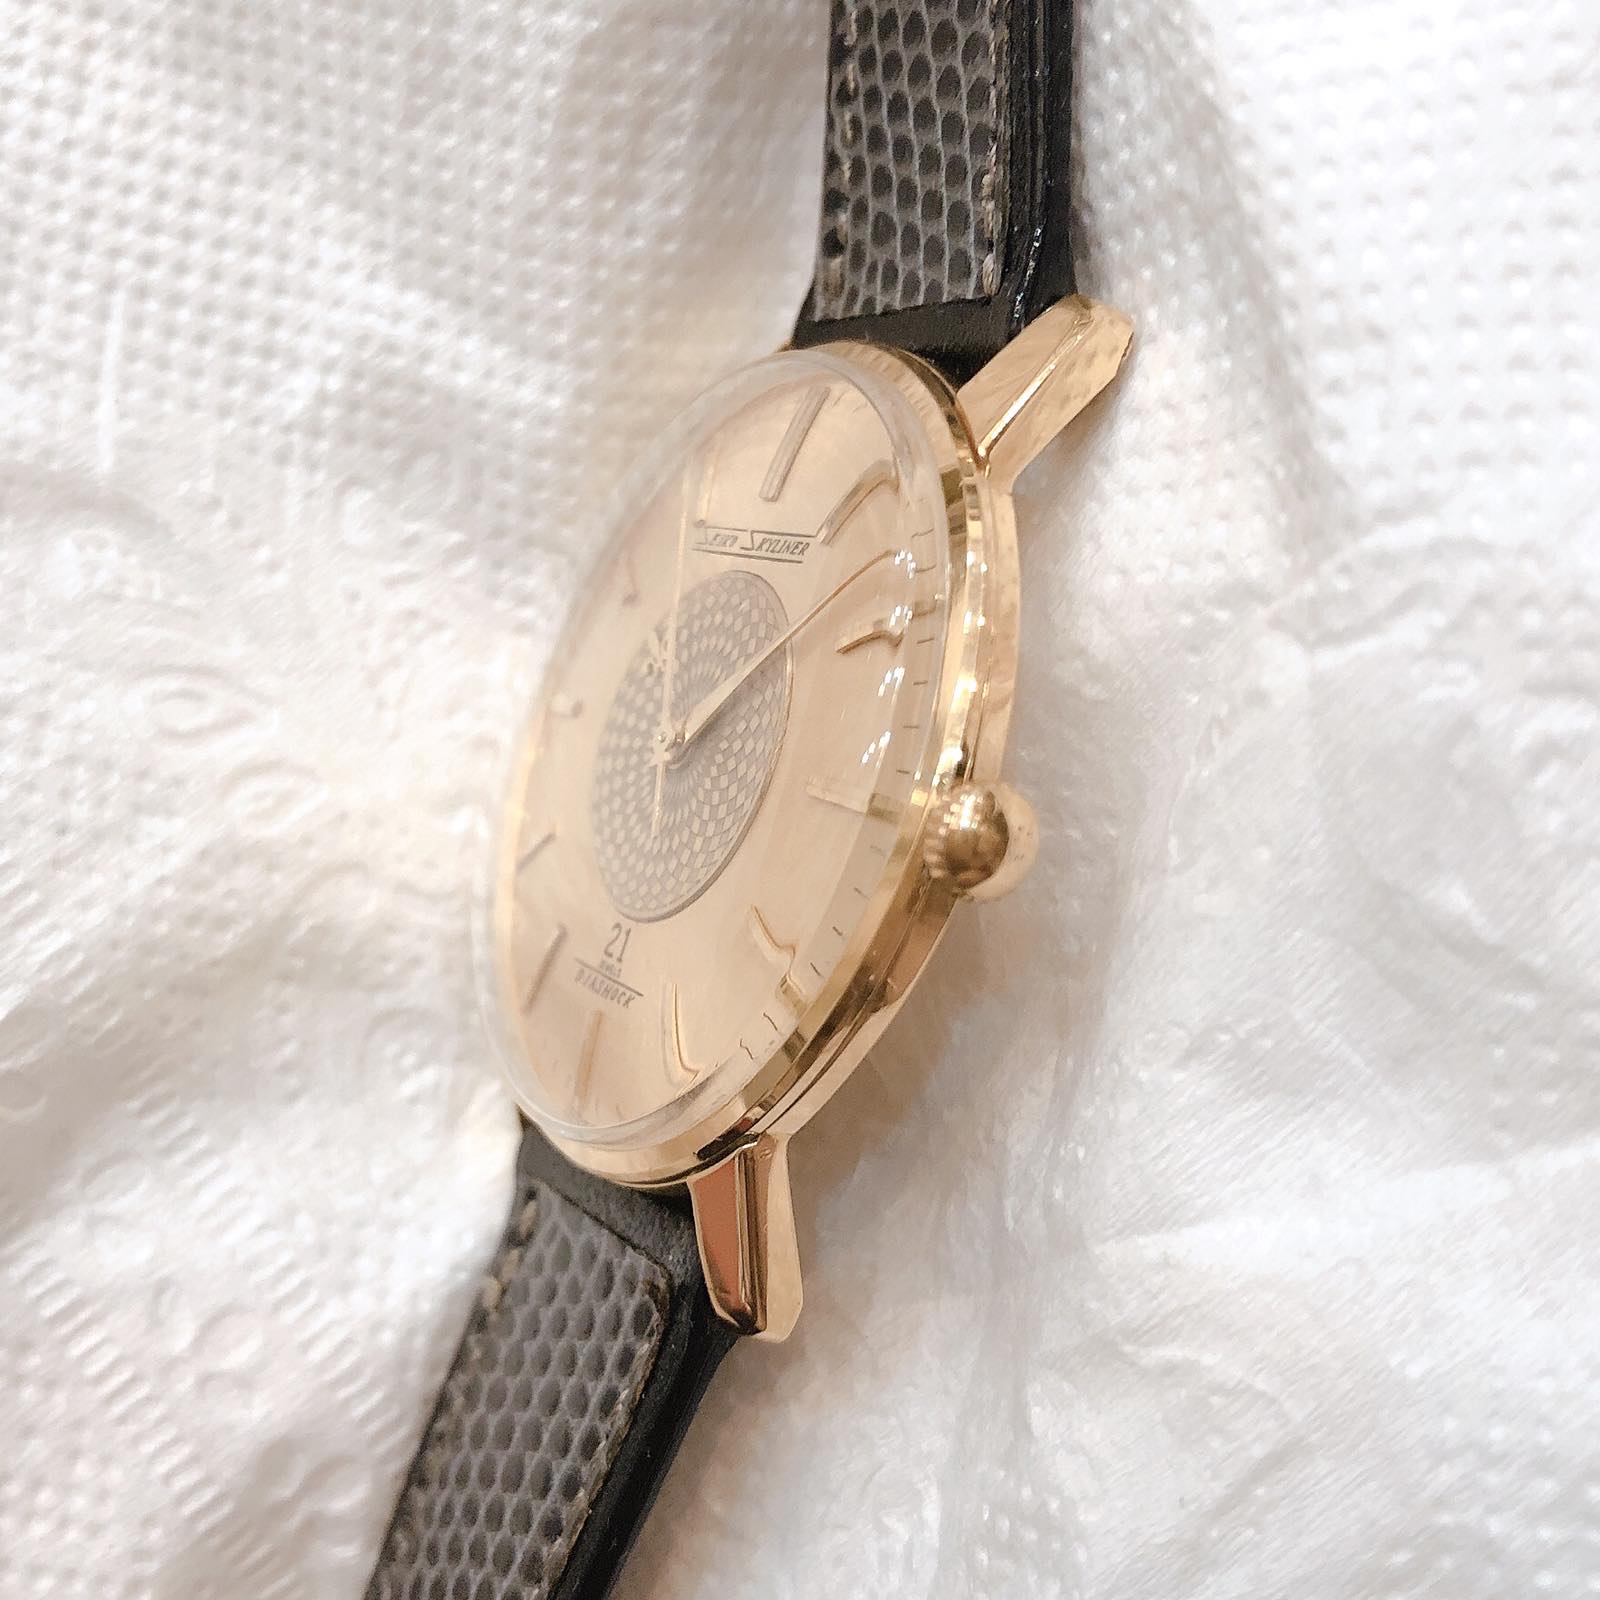 Đồng hồ cổ Seiko Skyline kim đĩa lên dây bọc vàng 14k goldfilled nhật bản